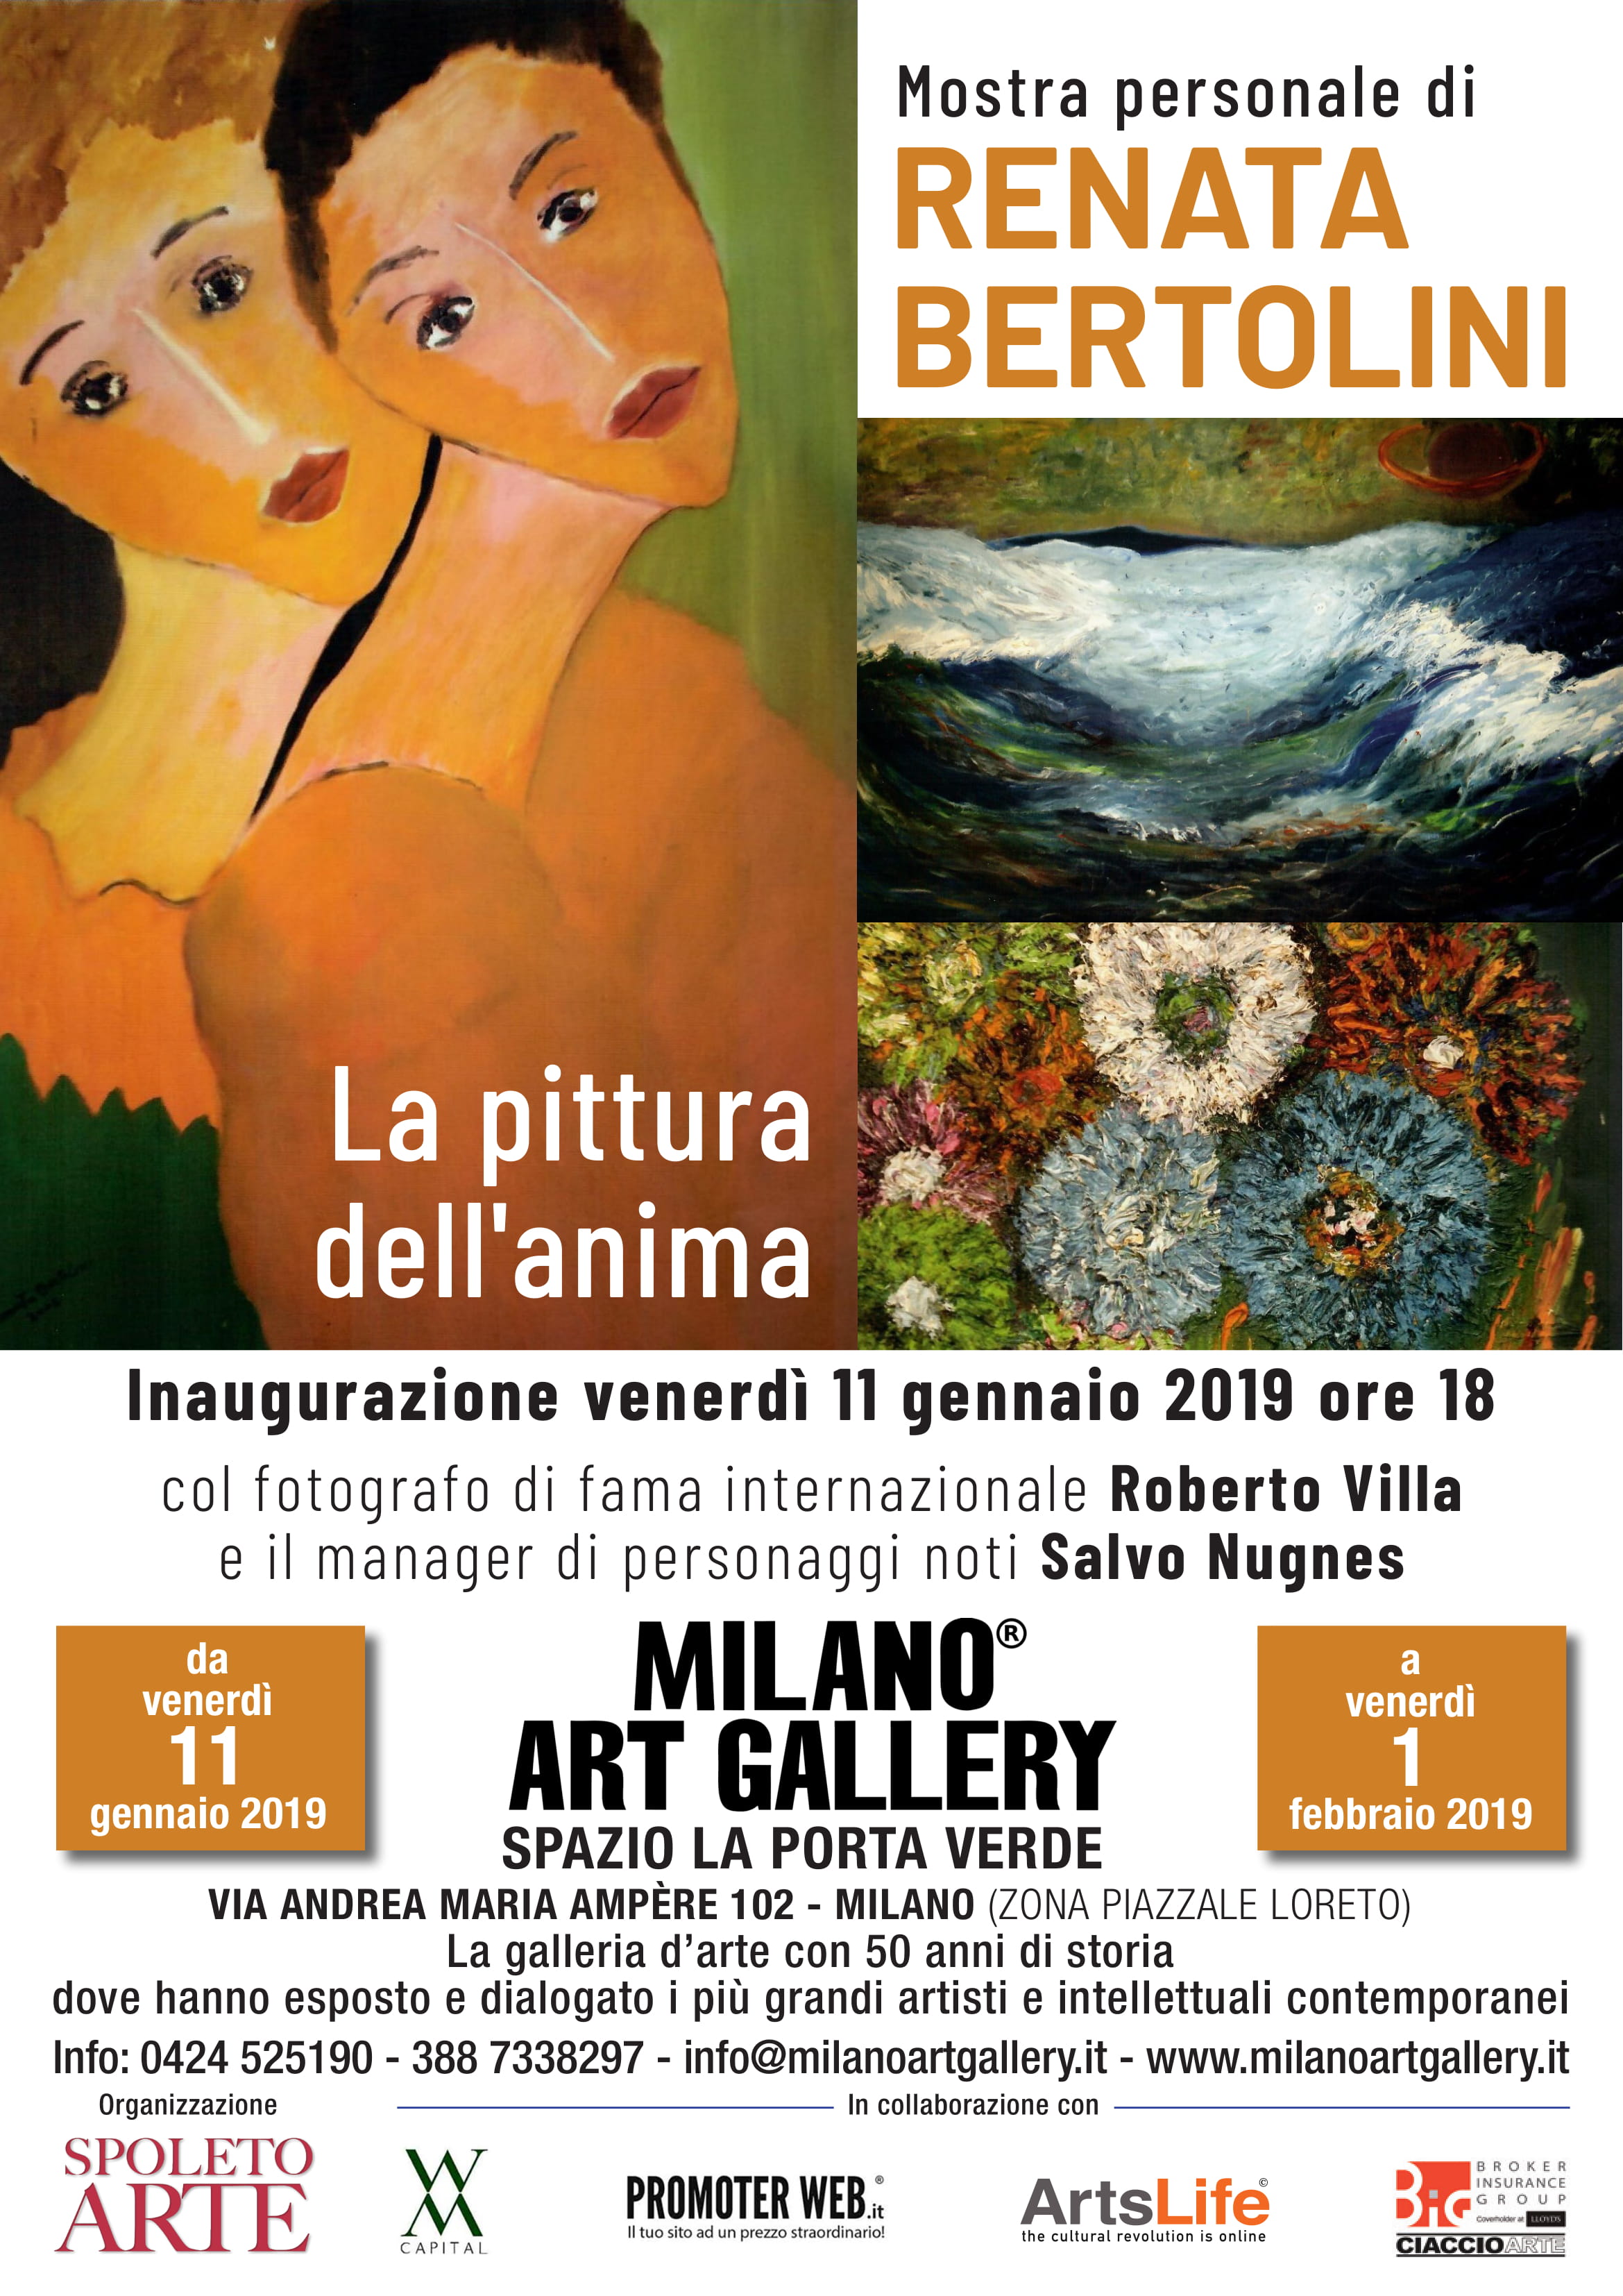 Milano Art Gallery: Salvo Nugnes, Maria Rita Parsi e Roberto Villa presentano Renata Bertolini